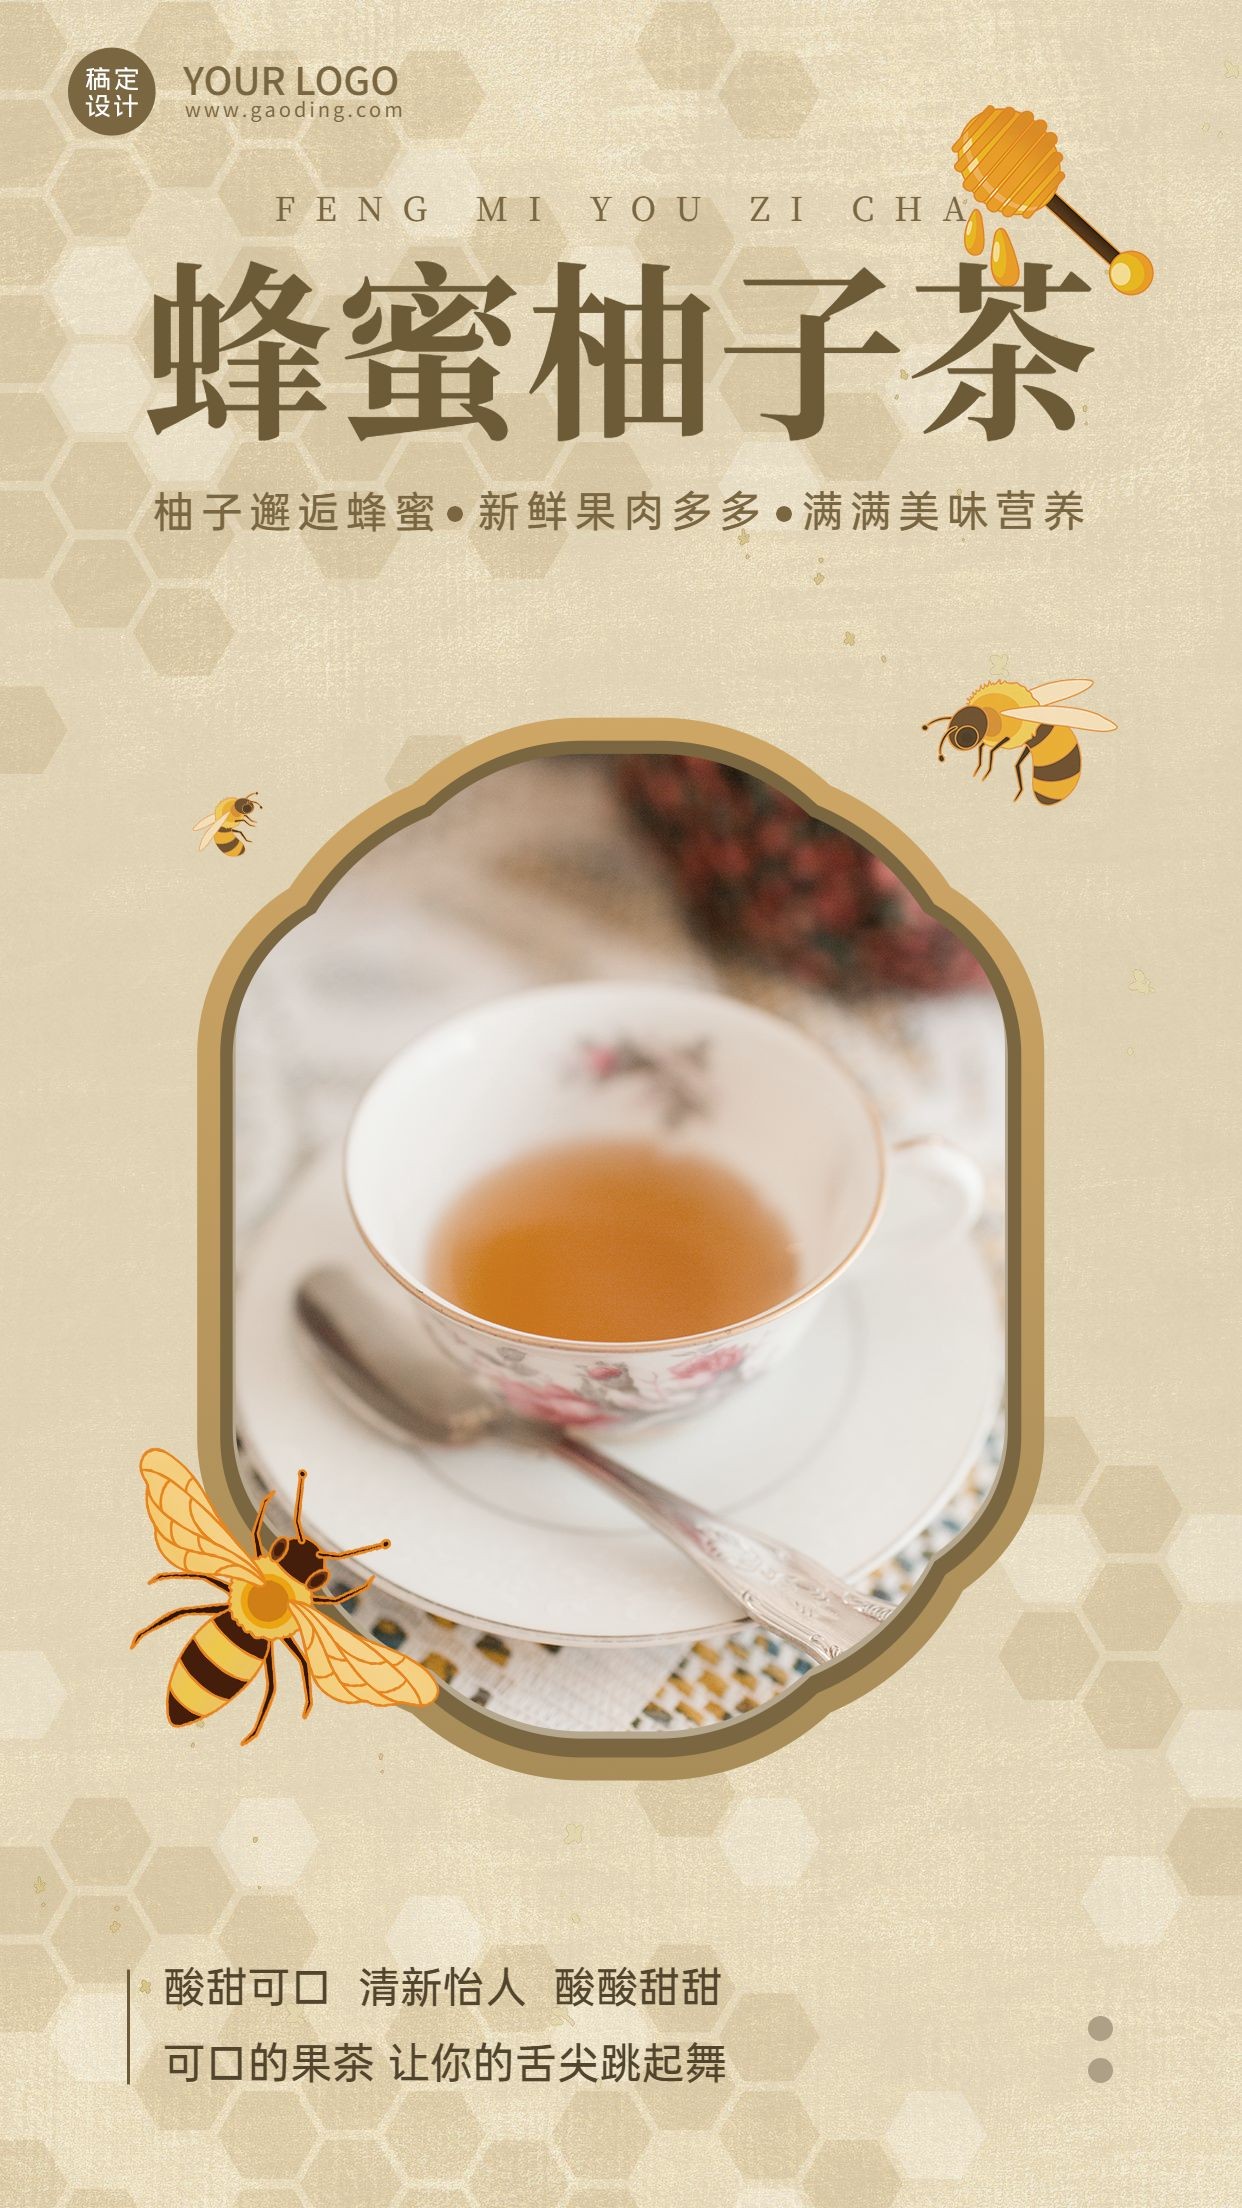 养生茶保健食品产品展示营销手机海报